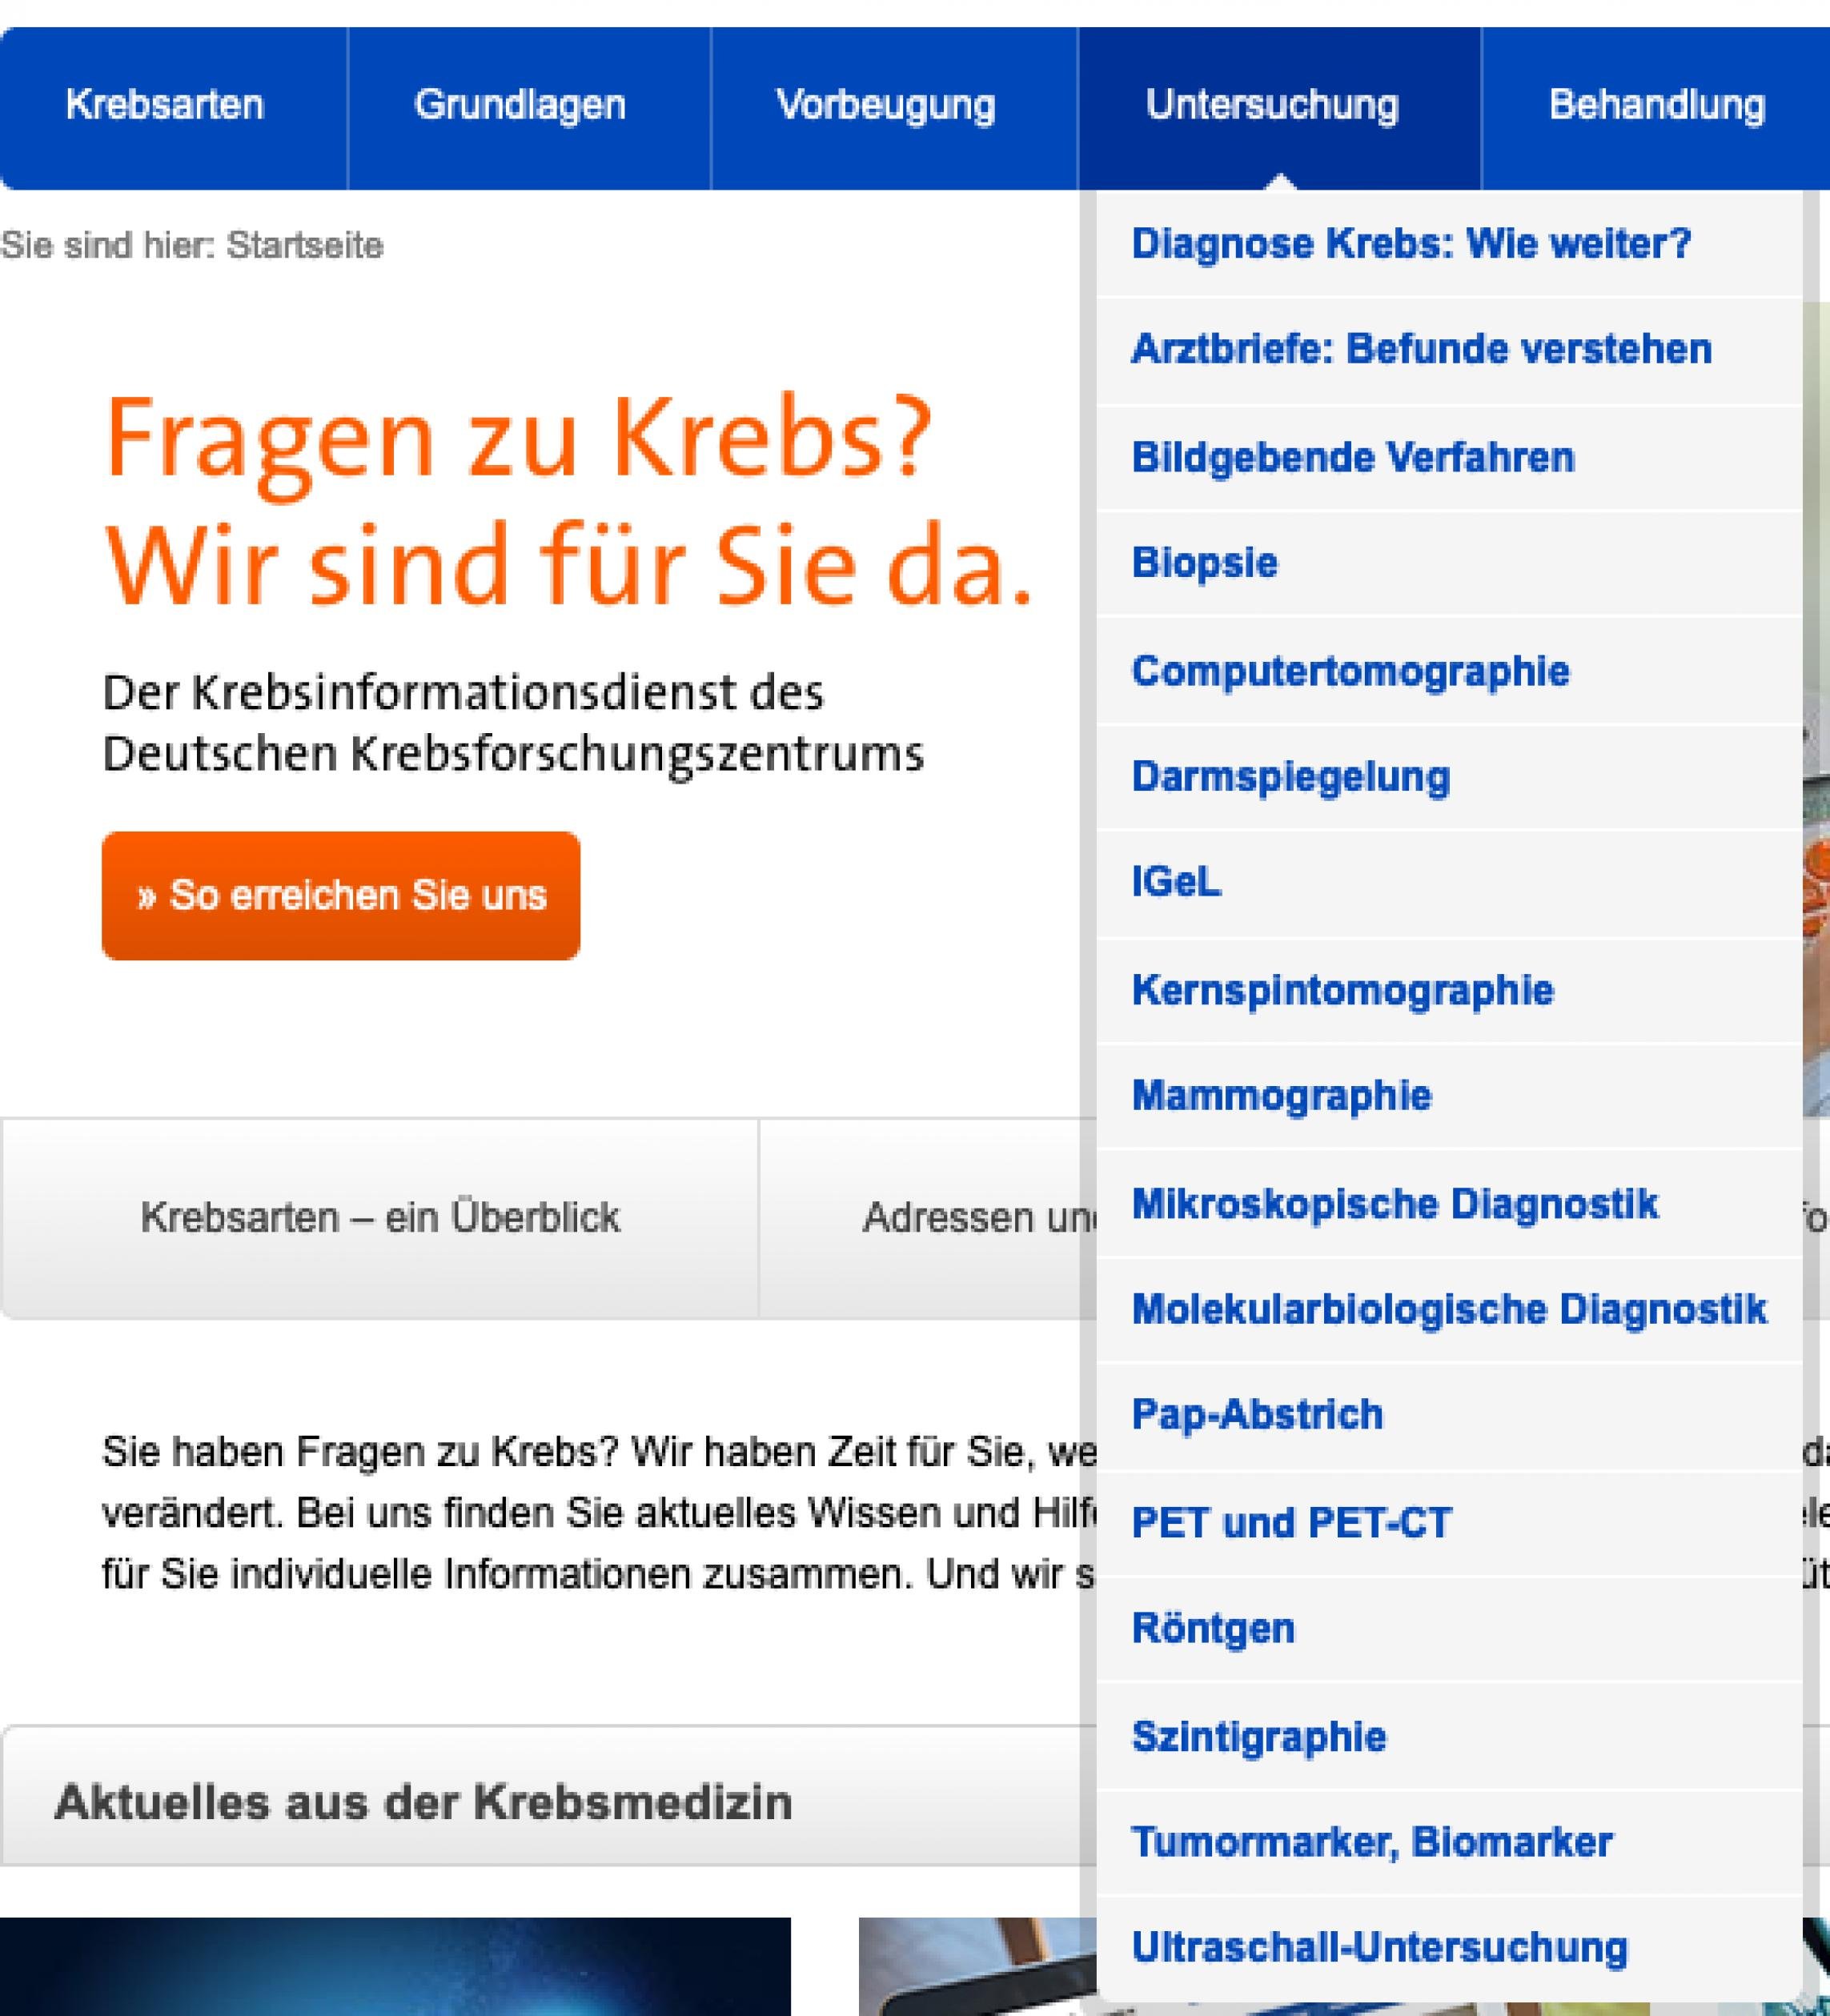 Screenshot Navigationselemente www.krebsinformationsdienst.de. Zu sehen ist ein Drop-Down-Menü zum Navigationspunkt „Untersuchung“